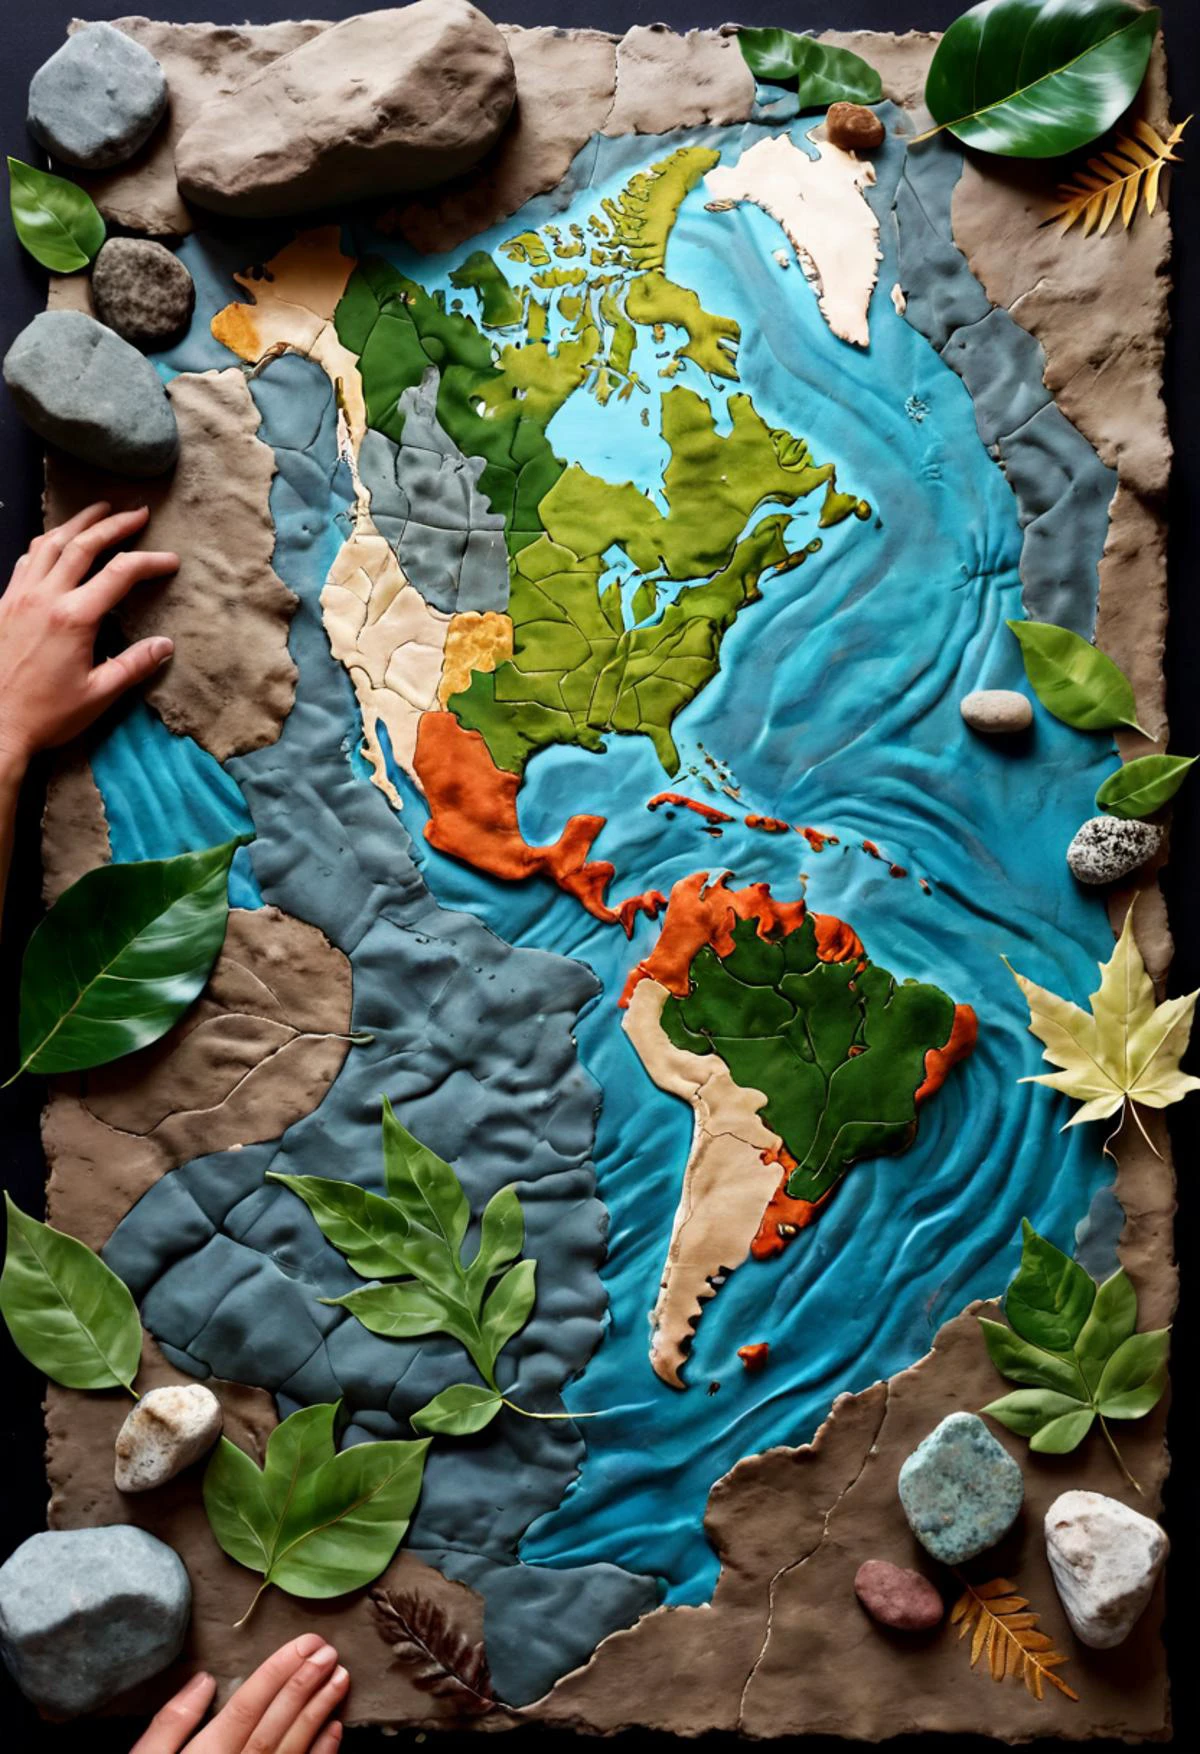 Un collage de técnicas mixtas que utiliza materiales terrestres como hojas., lodo, y rocas para crear un mapa táctil de un mundo ficticio, alta resolución, mejor calidad, 4k